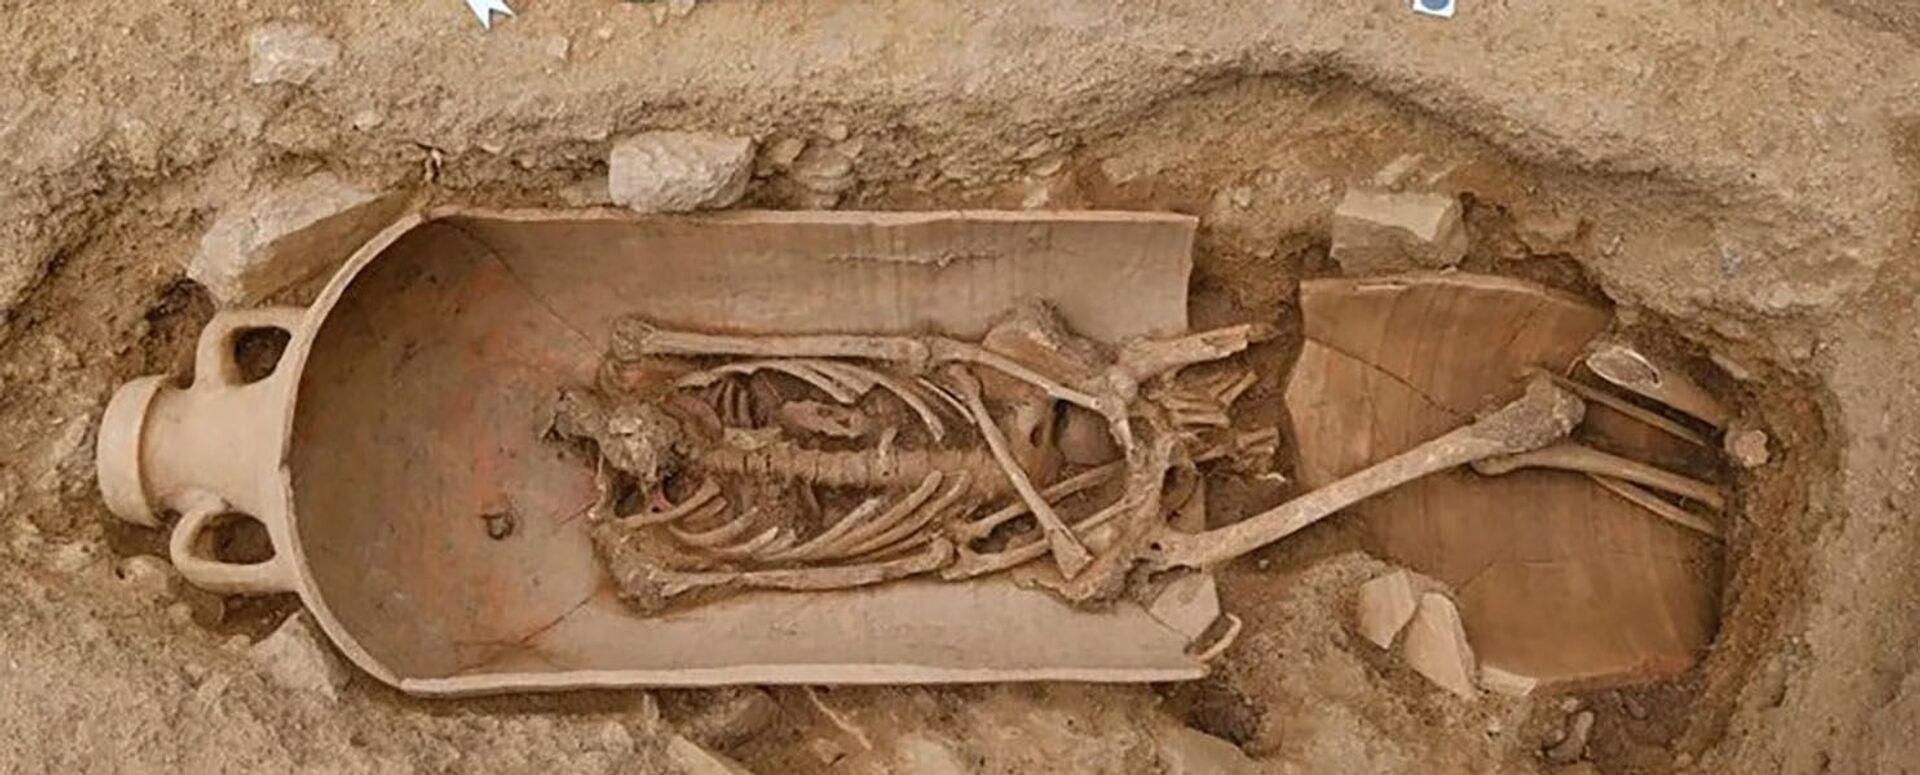 Descoberta antiga necrópole com humanos enterrados dentro de jarros africanos em Córsega (FOTOS) - Sputnik Brasil, 1920, 14.05.2021